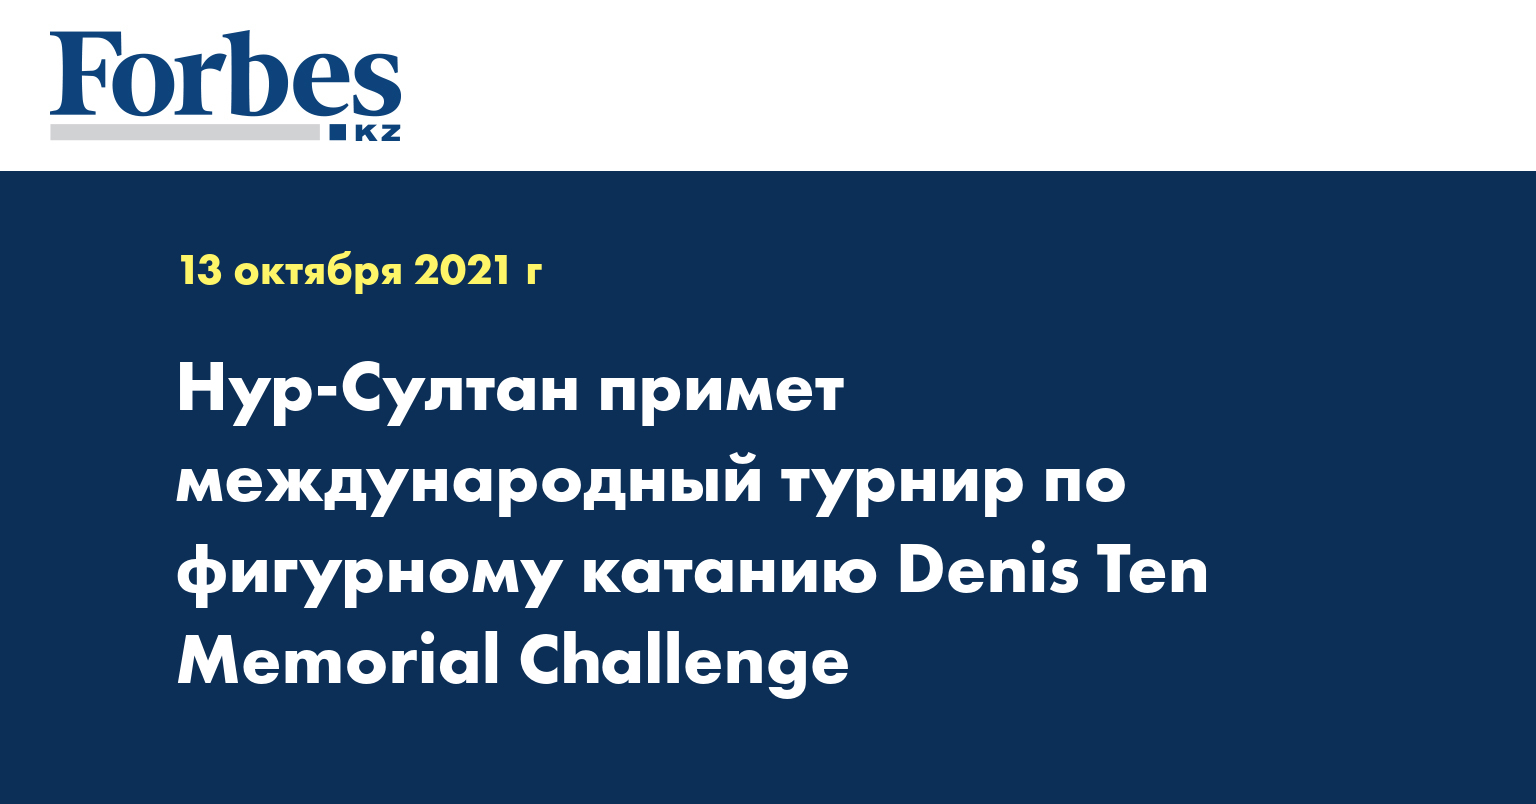 Нур-Султан примет международный турнир по фигурному катанию Denis Ten Memorial Challenge